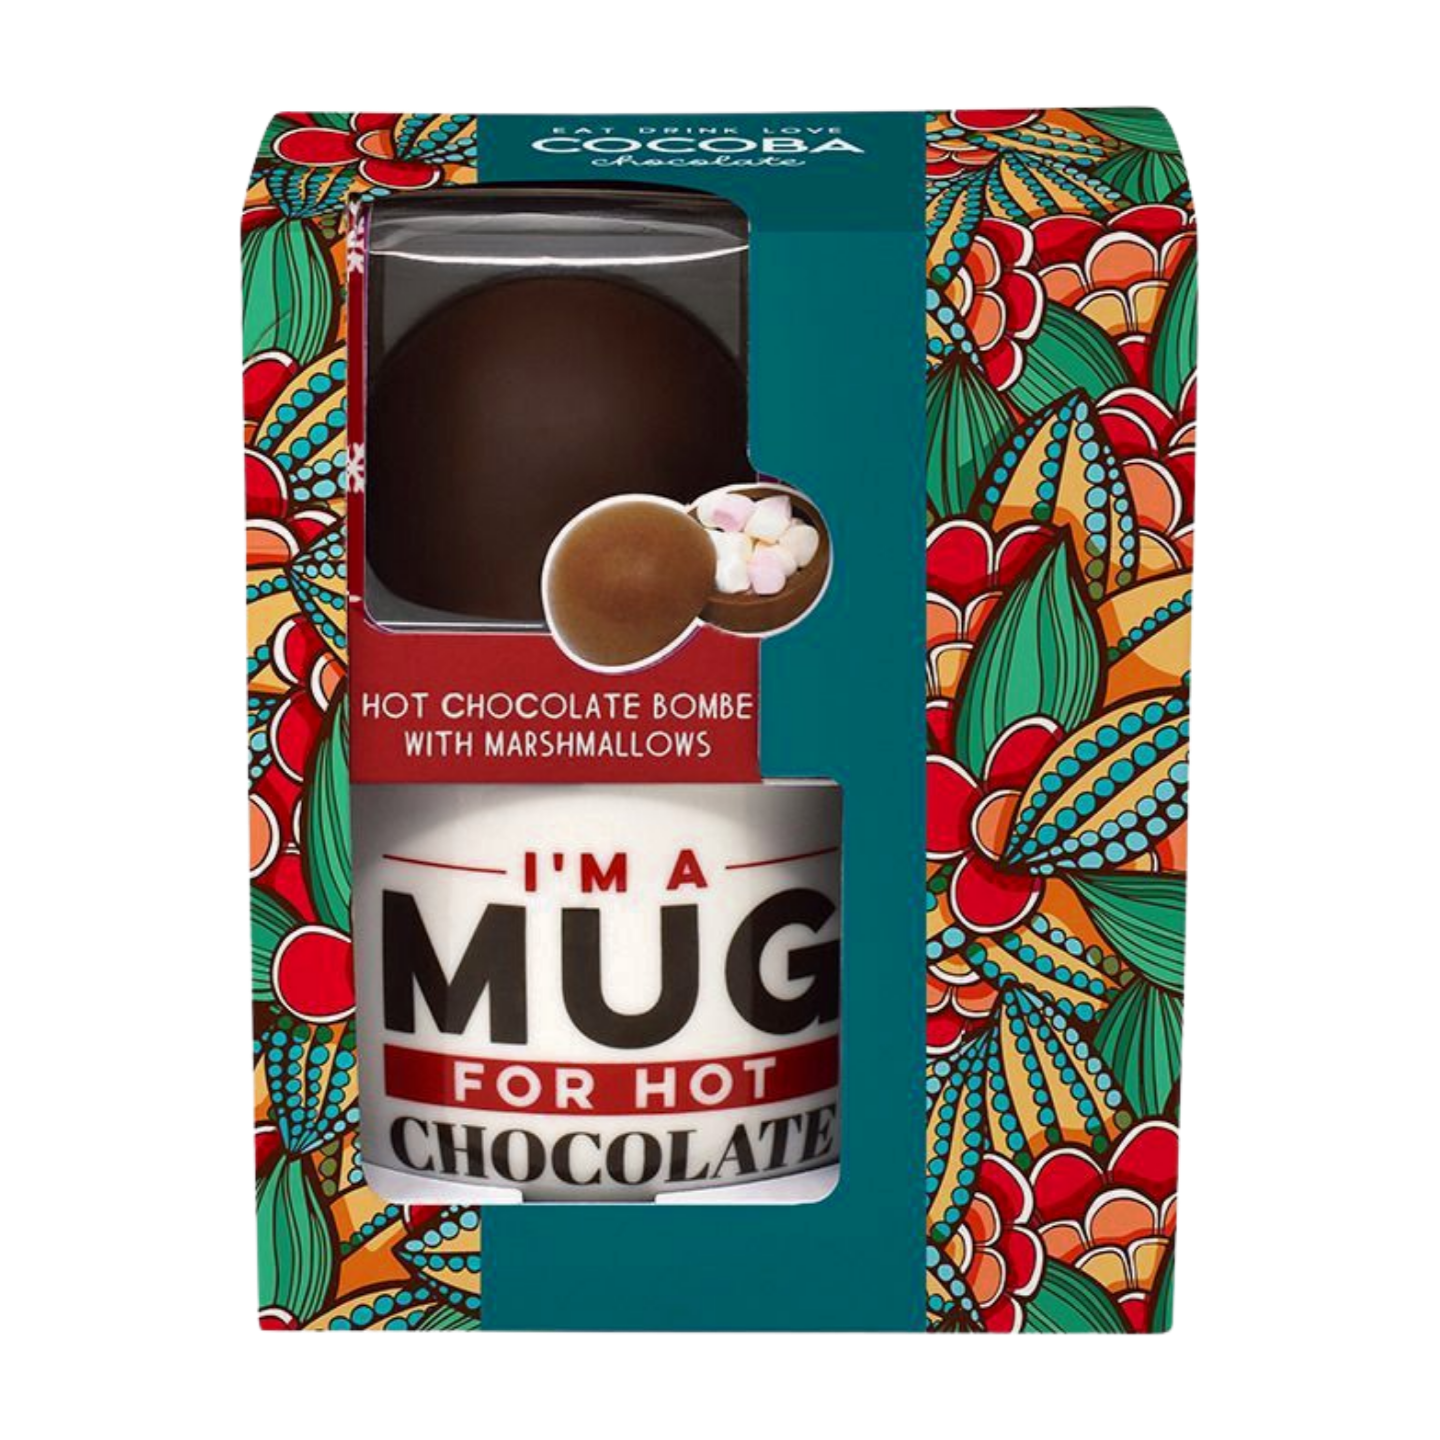 Cocoba Mug & Hot Chocolate Bombe Gift Set (50g)